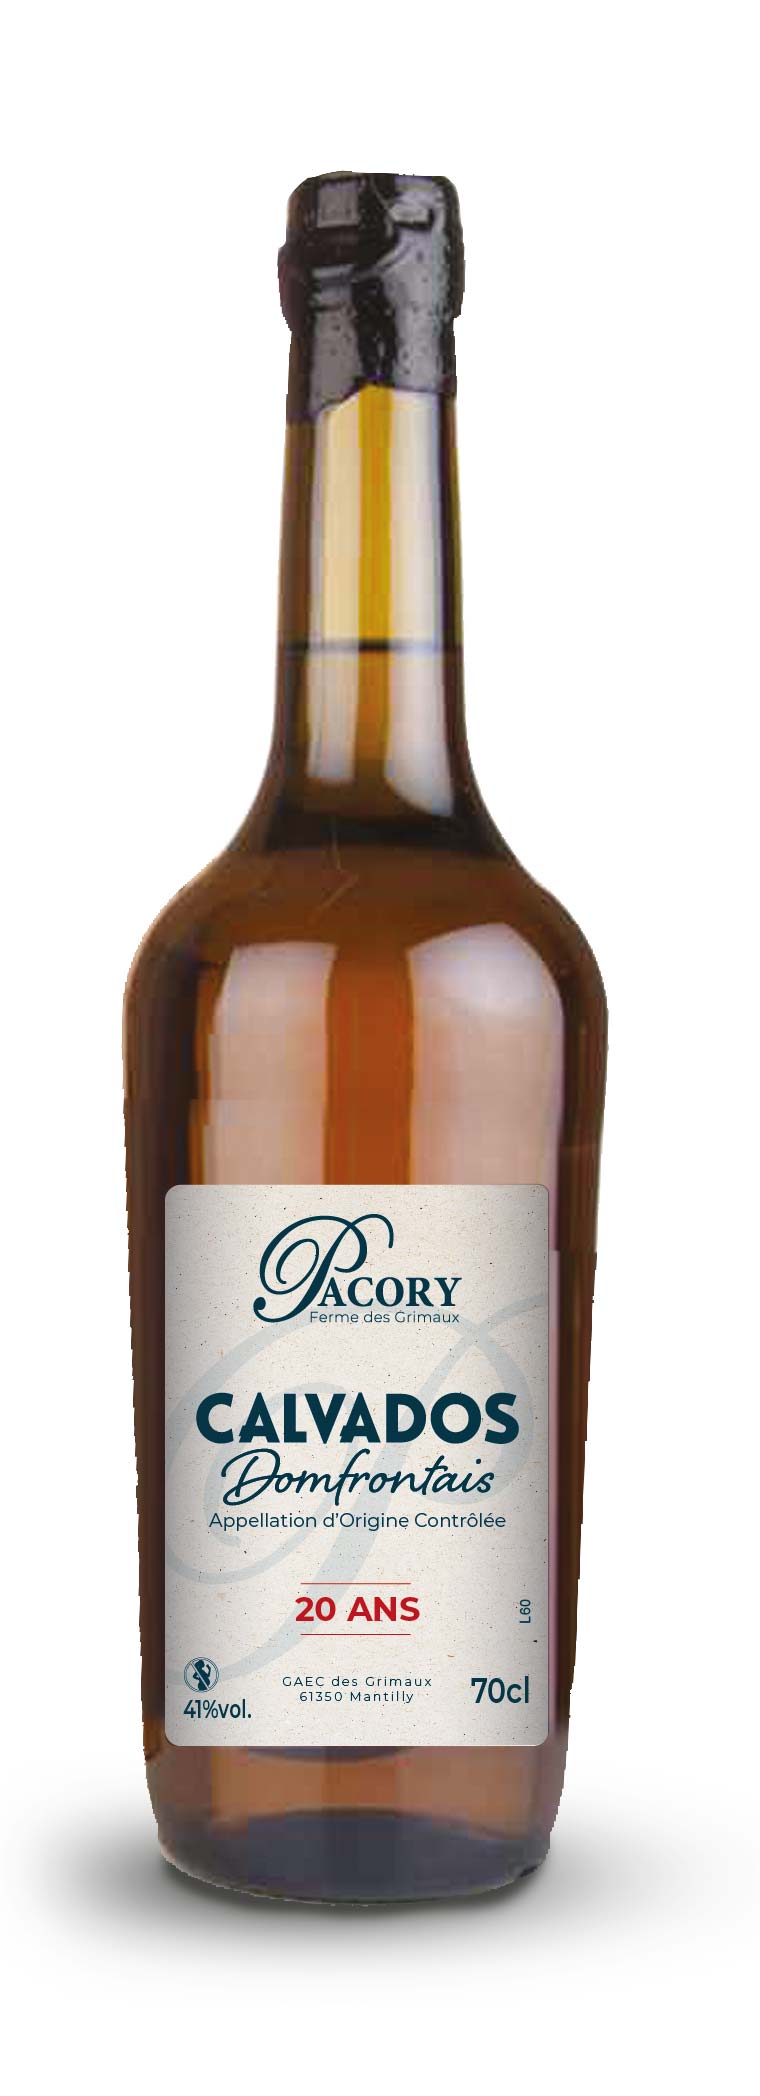 Calvados Domfrontais Pacory 20ans